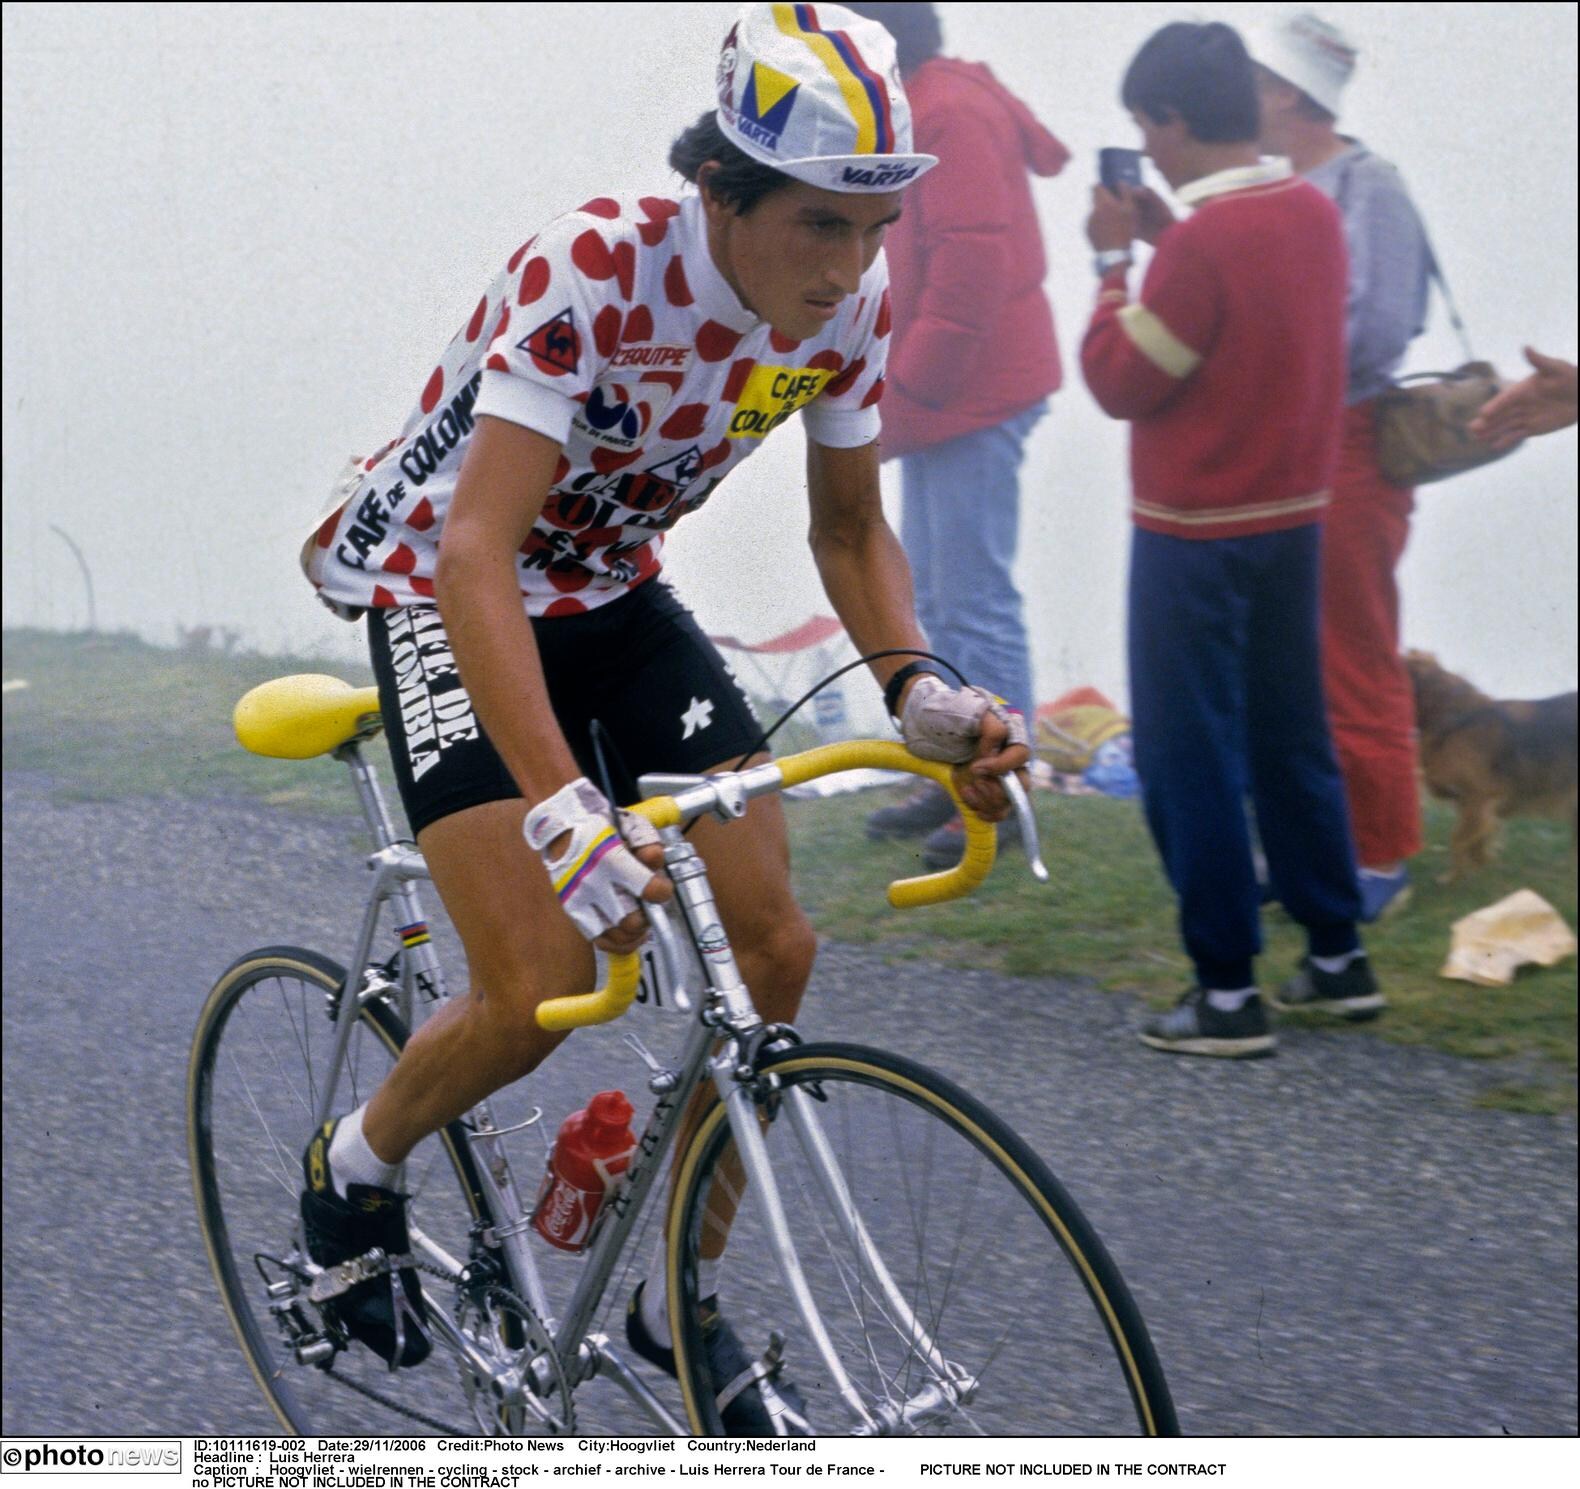 Colombiaanse wielerlegende Lucho Herrera had huidkanker